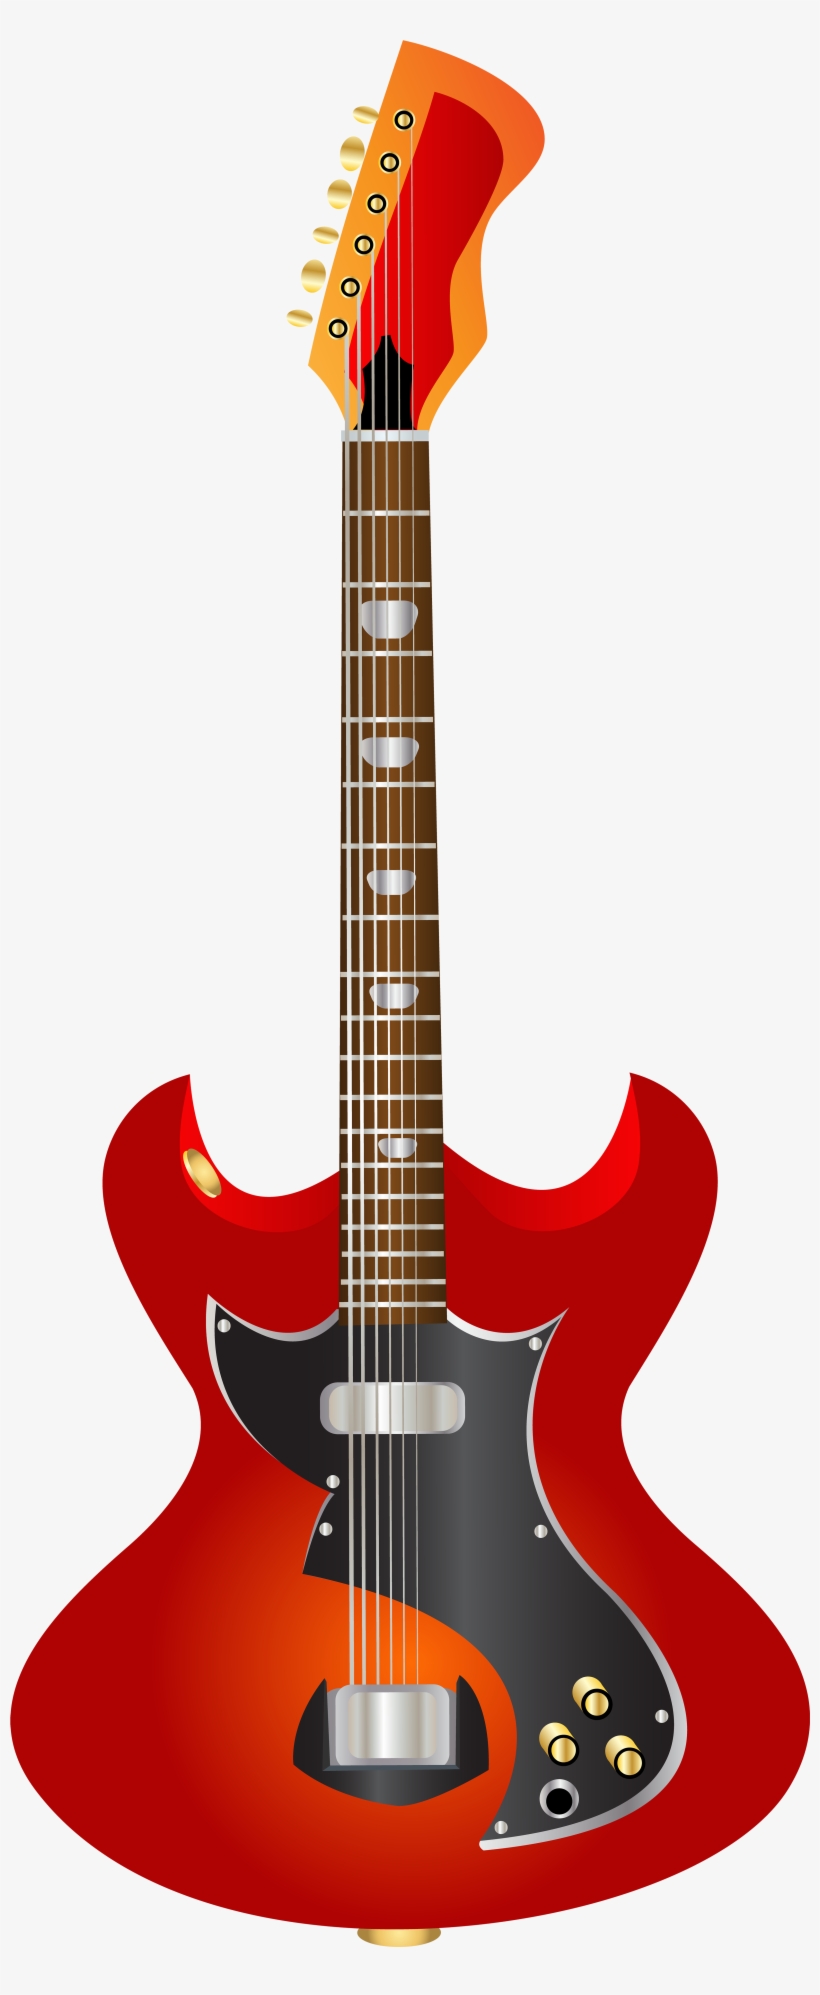 Guitar Png Clip Art - Png Clipart Of Guitars, transparent png #555523